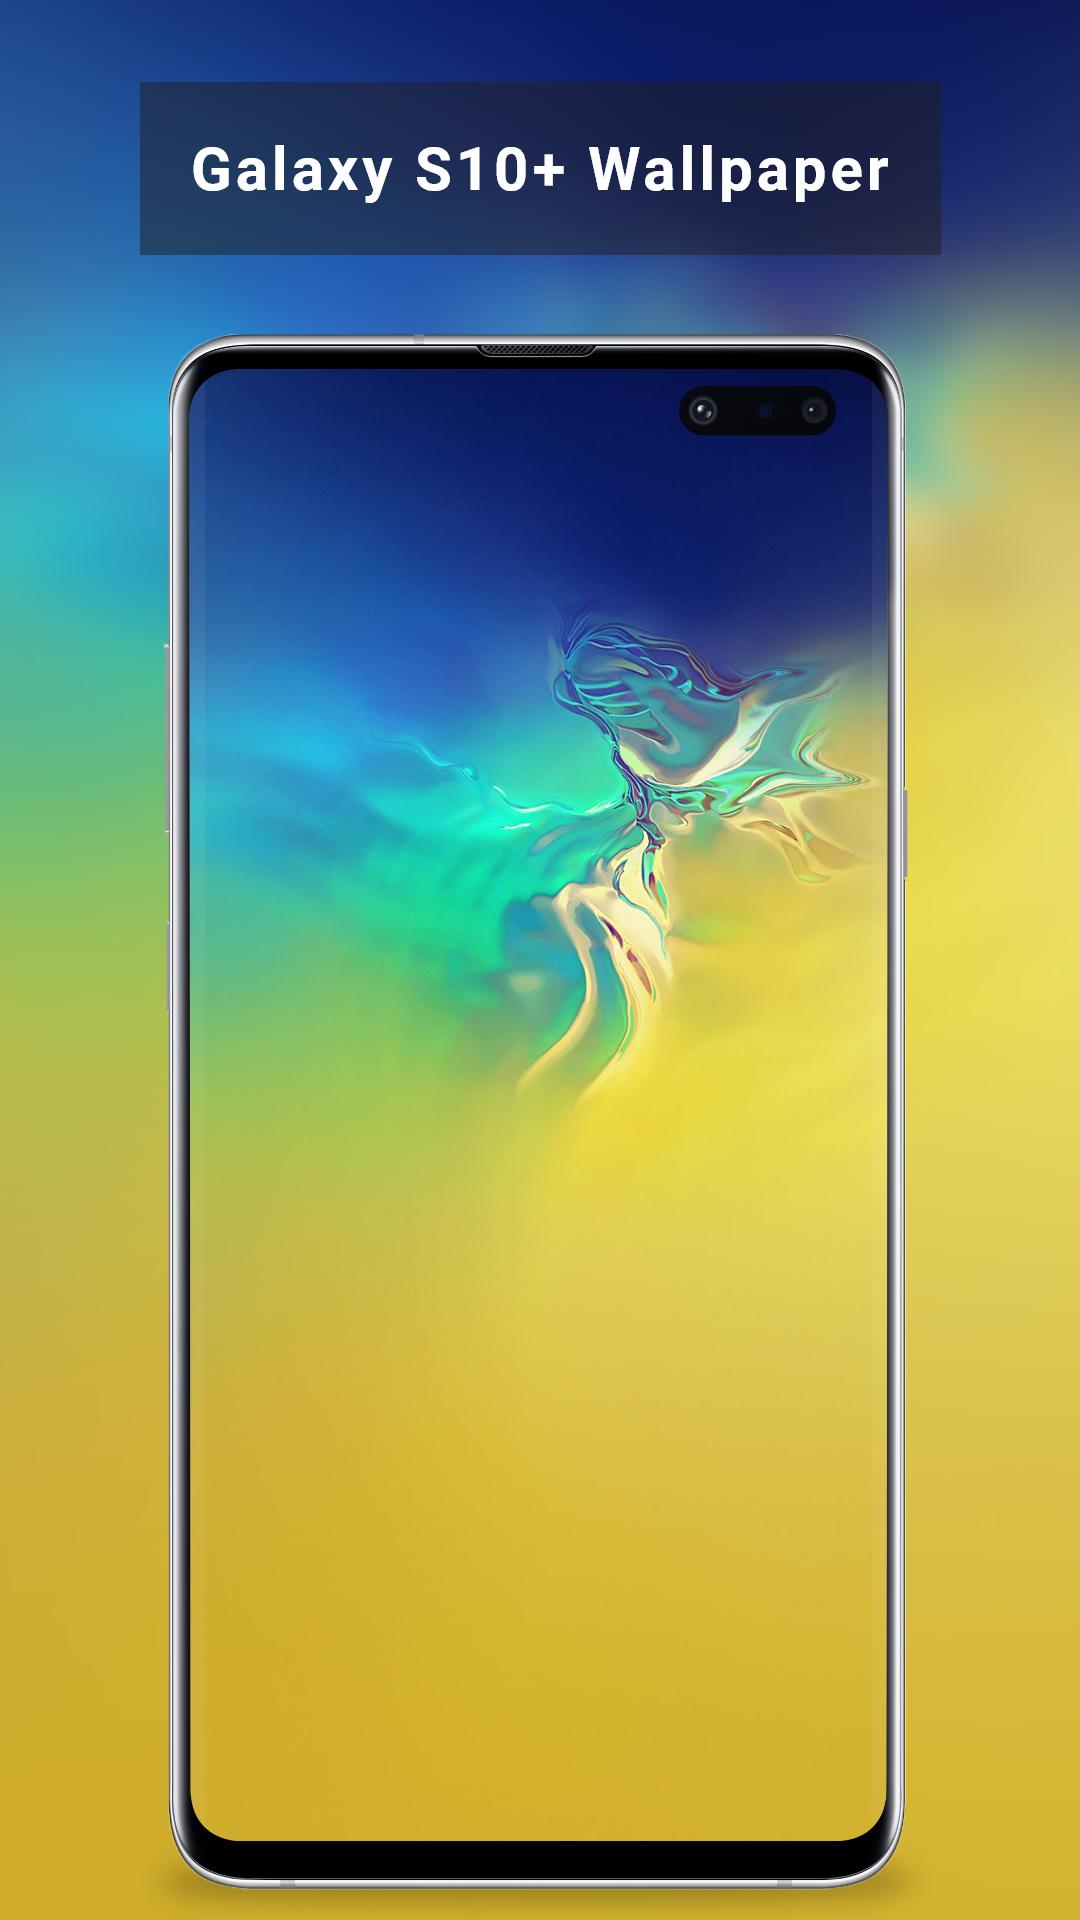 Bạn đang tìm kiếm một hình nền tuyệt đẹp cho Samsung Galaxy S10? Với bộ sưu tập Wallpaper Galaxy S10, bạn sẽ có cơ hội khám phá những bức ảnh đẹp đến ngỡ ngàng. Tất cả các hình nền đều được thiết kế độc đáo với những gam màu tươi sáng và sự kết hợp hài hòa giữa các yếu tố tạo nên một tác phẩm nghệ thuật độc đáo.